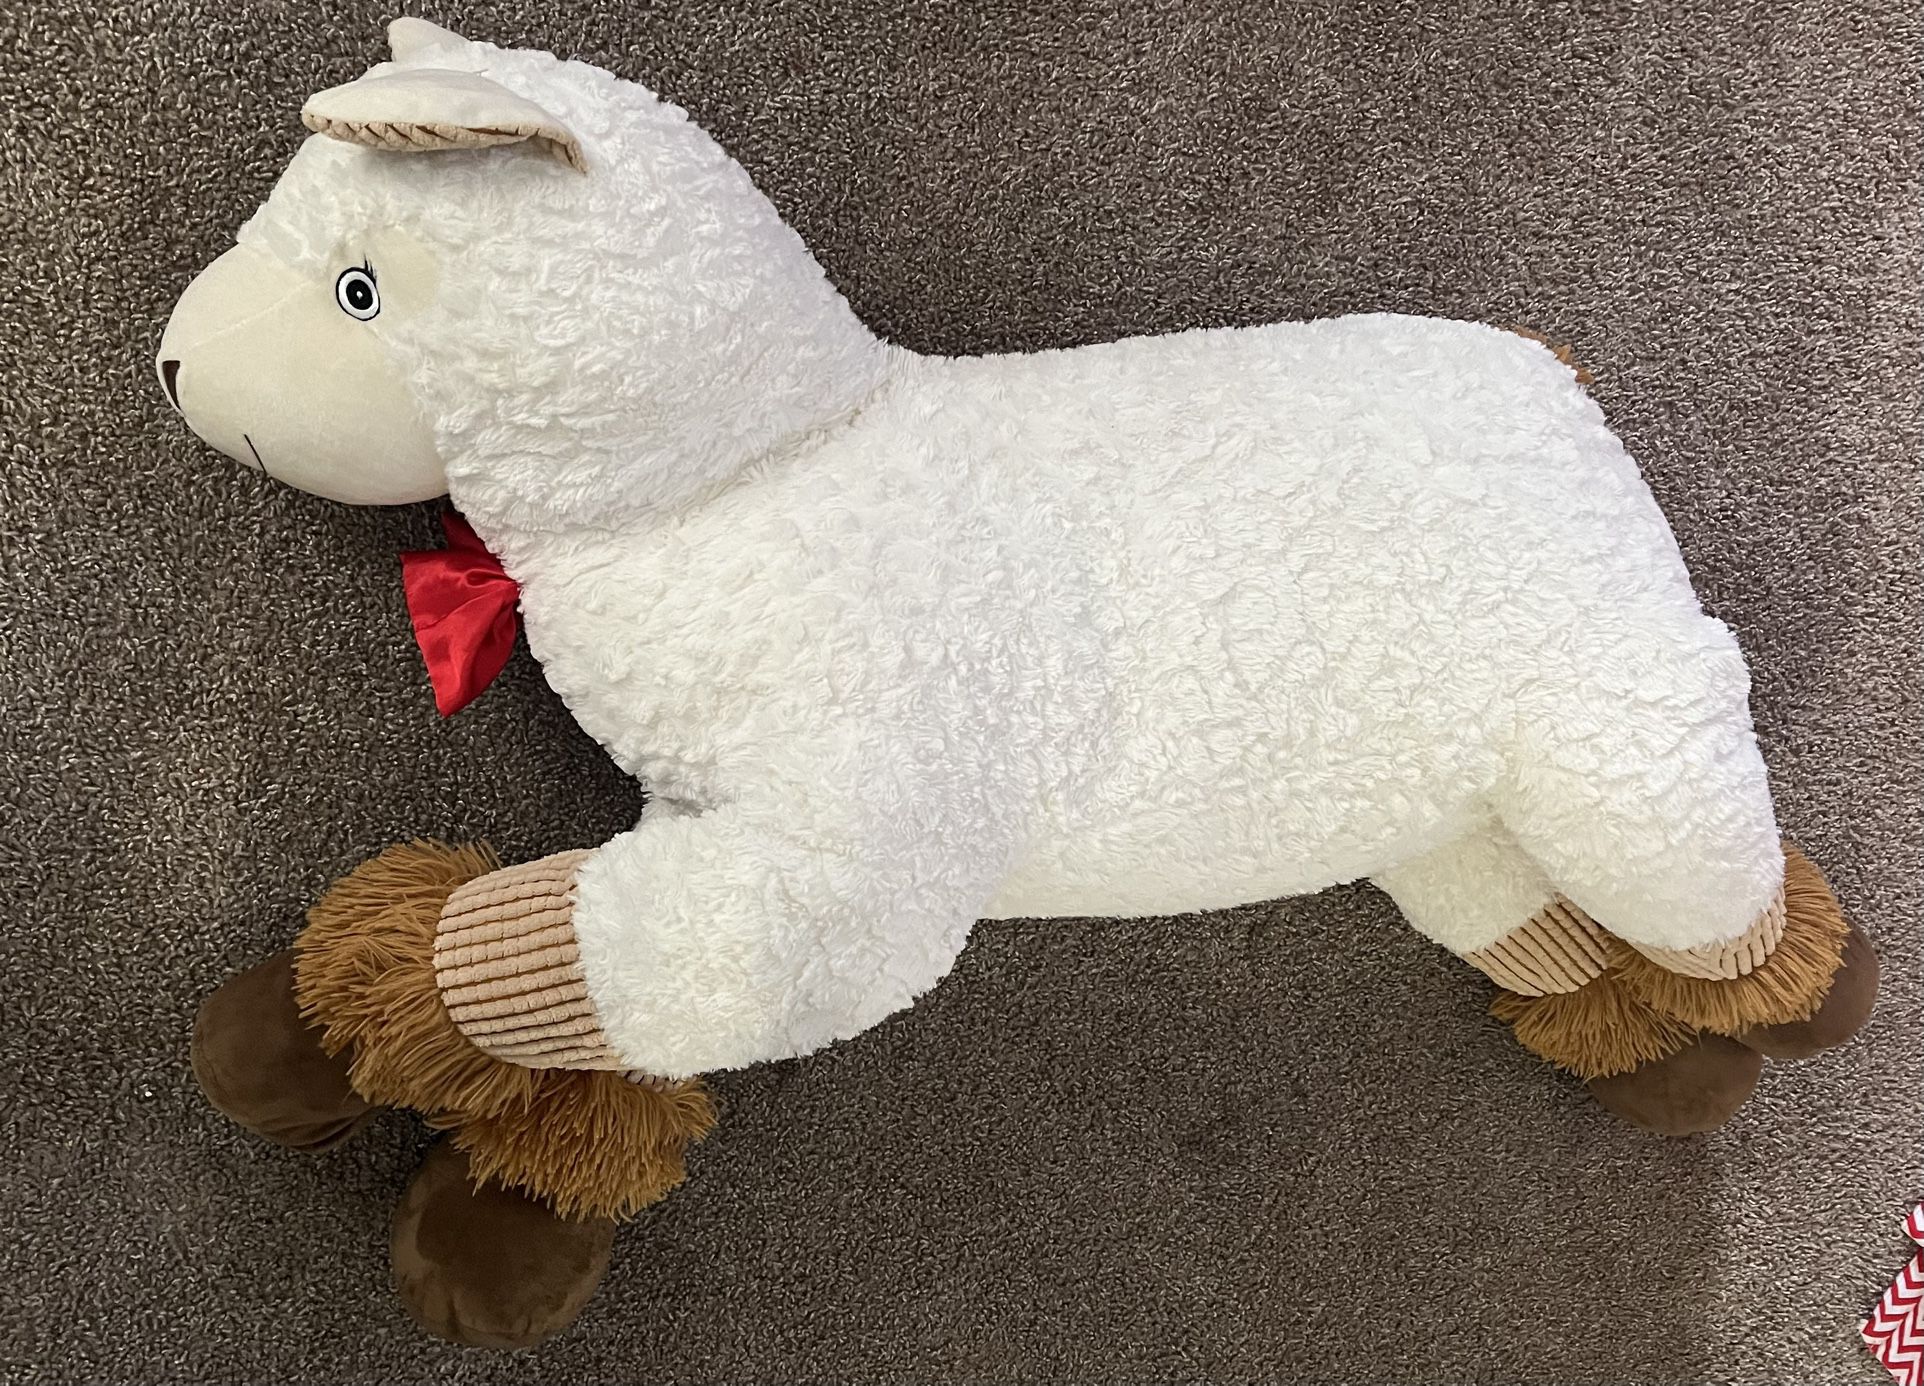 Giant Sheep  🐑 Stuffed Animal